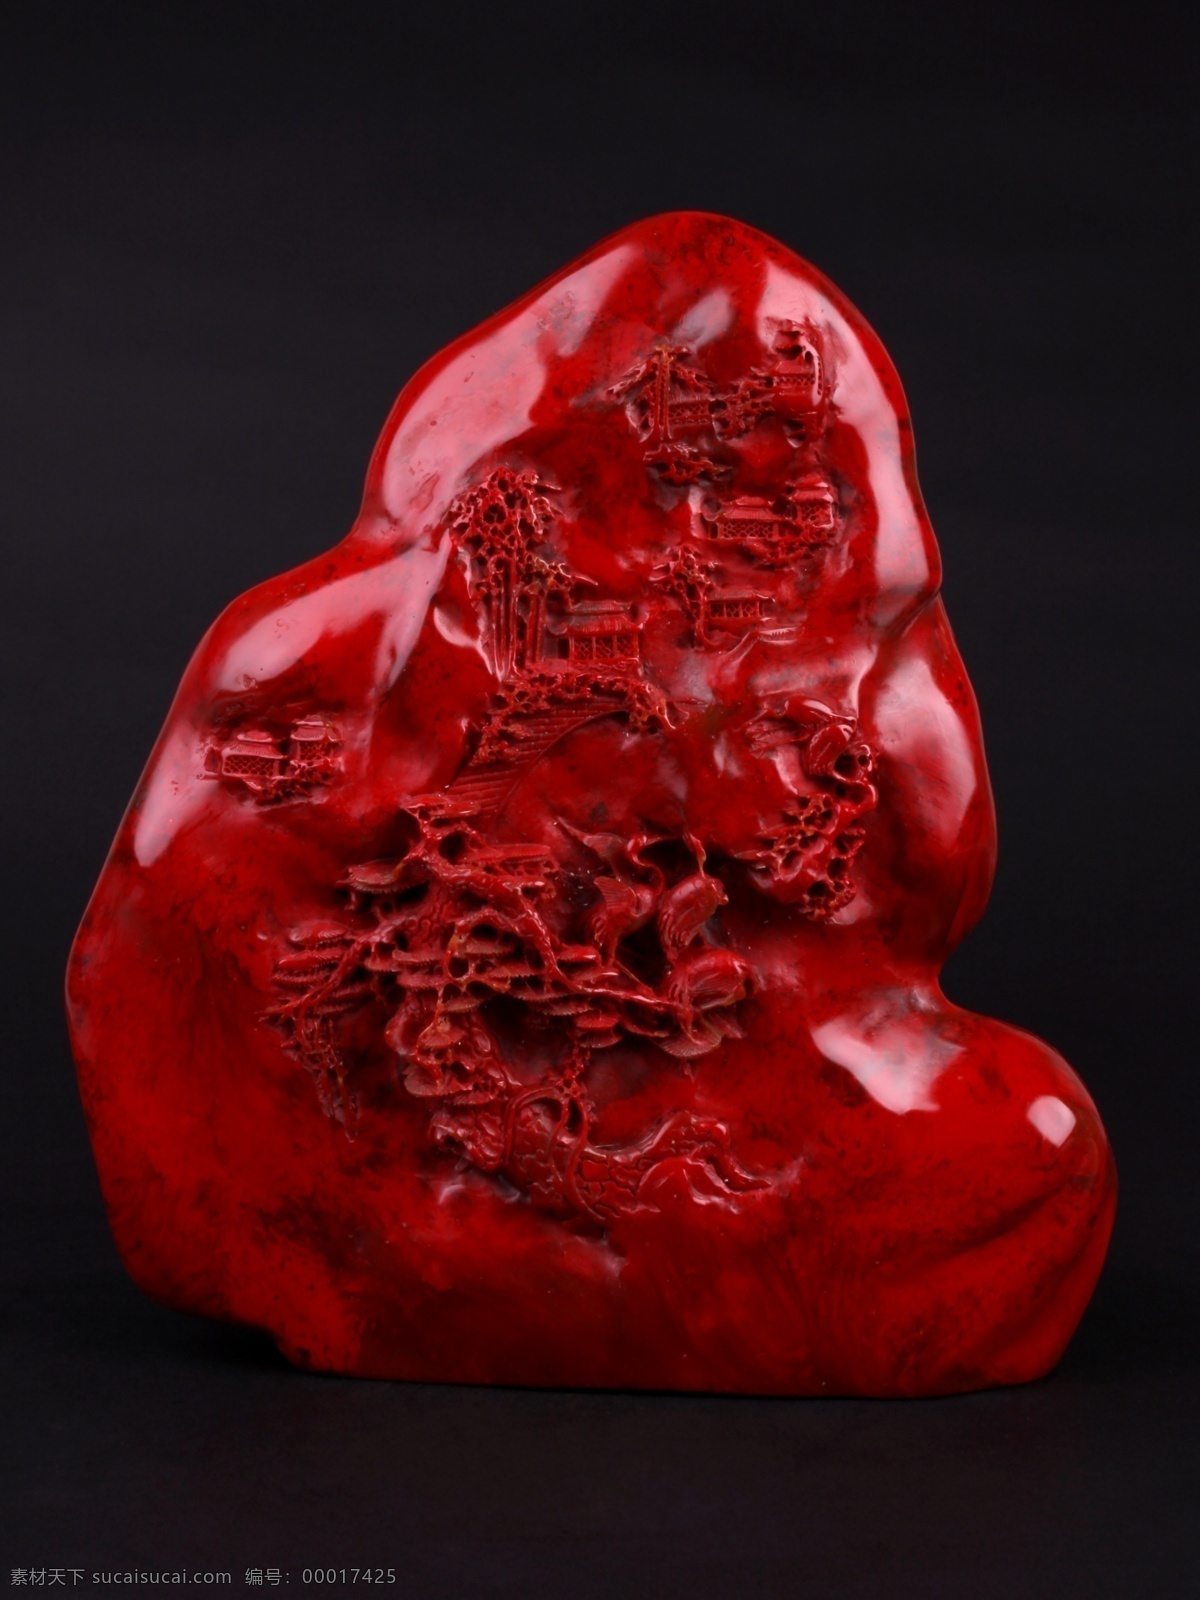 玉石 鸡血石 古玩 瓷器 青花瓷 玉器 收藏 传统文化 文化艺术